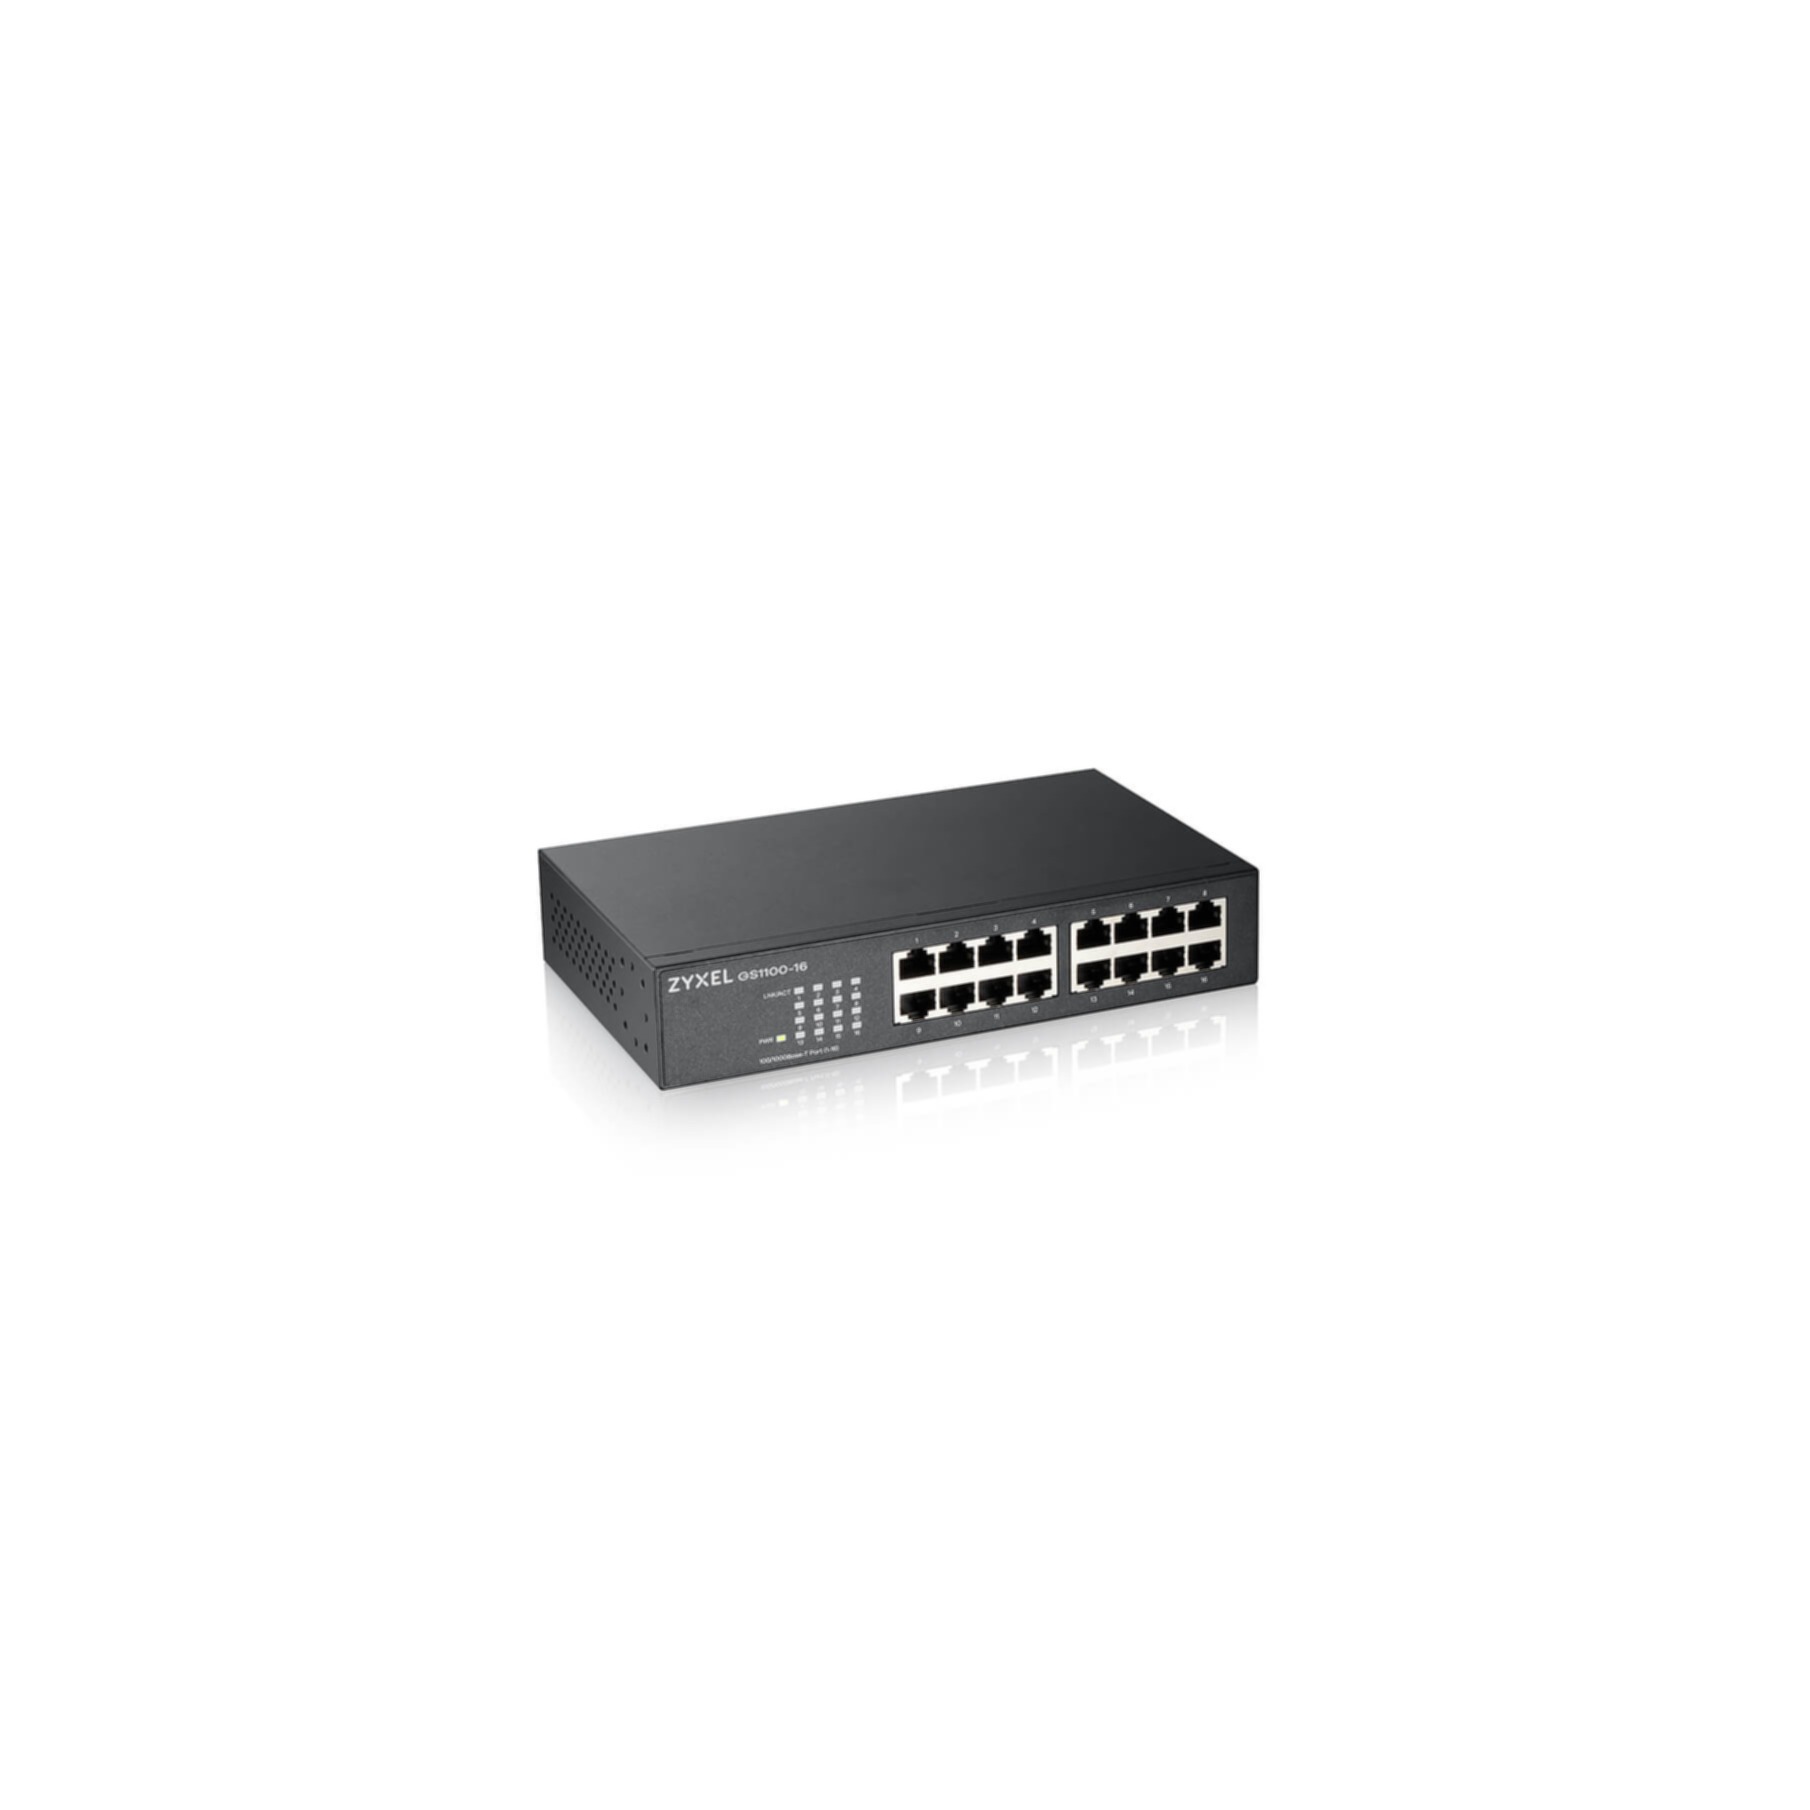 Netzwerk-Switch »GS1100-16«